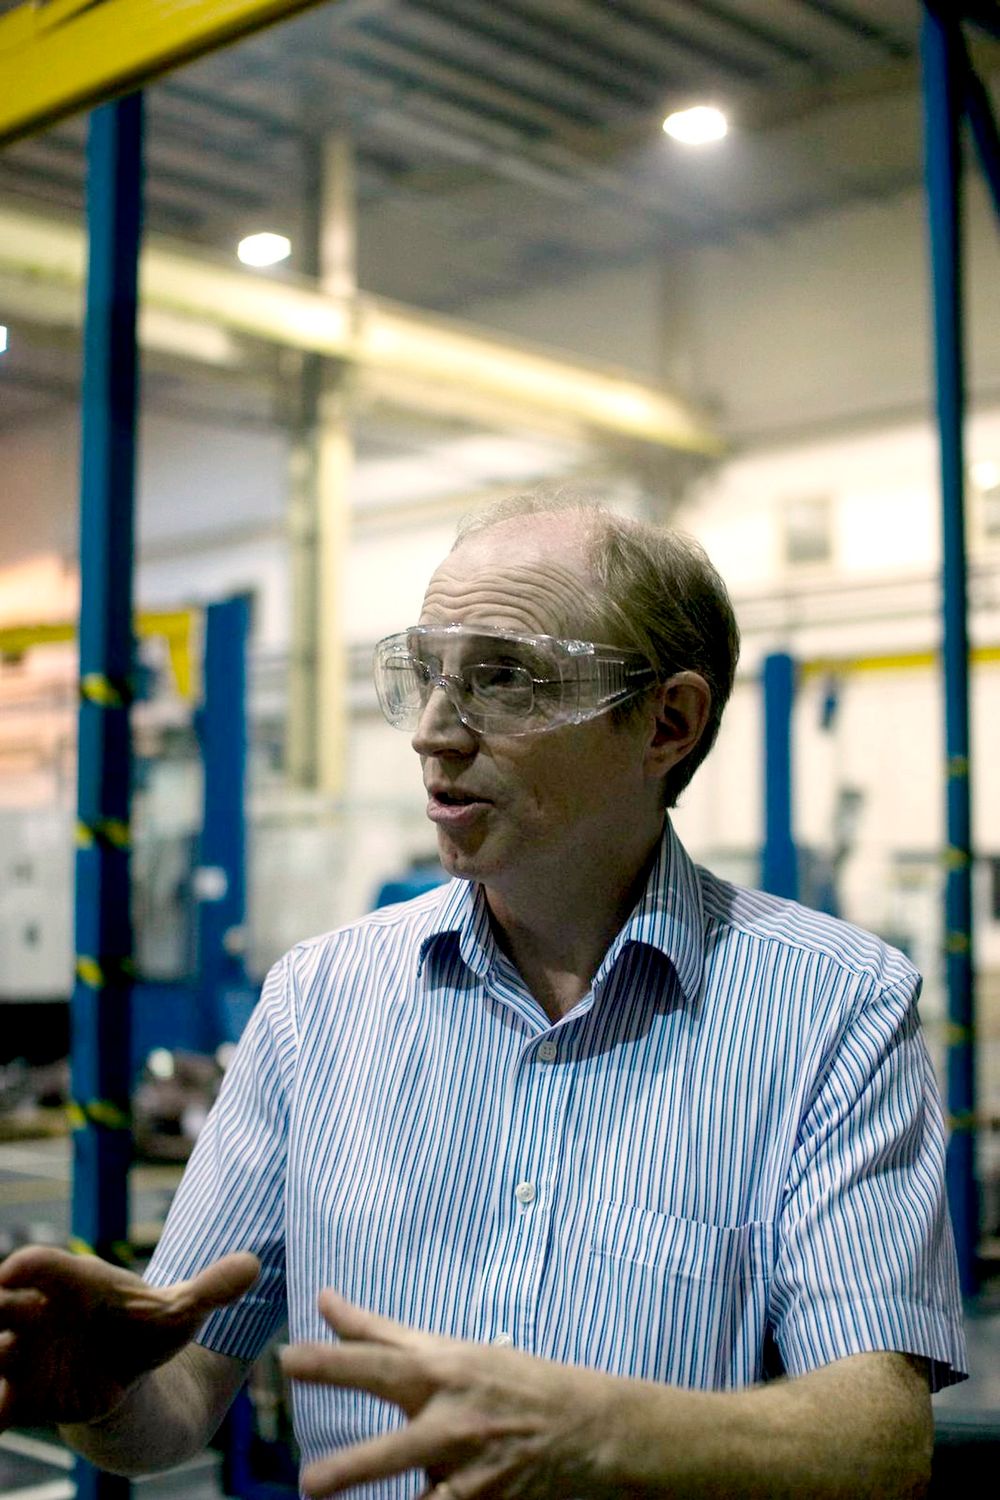 David Gillian, administrerende direktør for Newburgh Engineering i Sheffield, en bedrift spesialisert på customization, i Newburghs tilfelle skreddersydde komponenter i stål til olje-, gass- og atomkraftsektoren.  